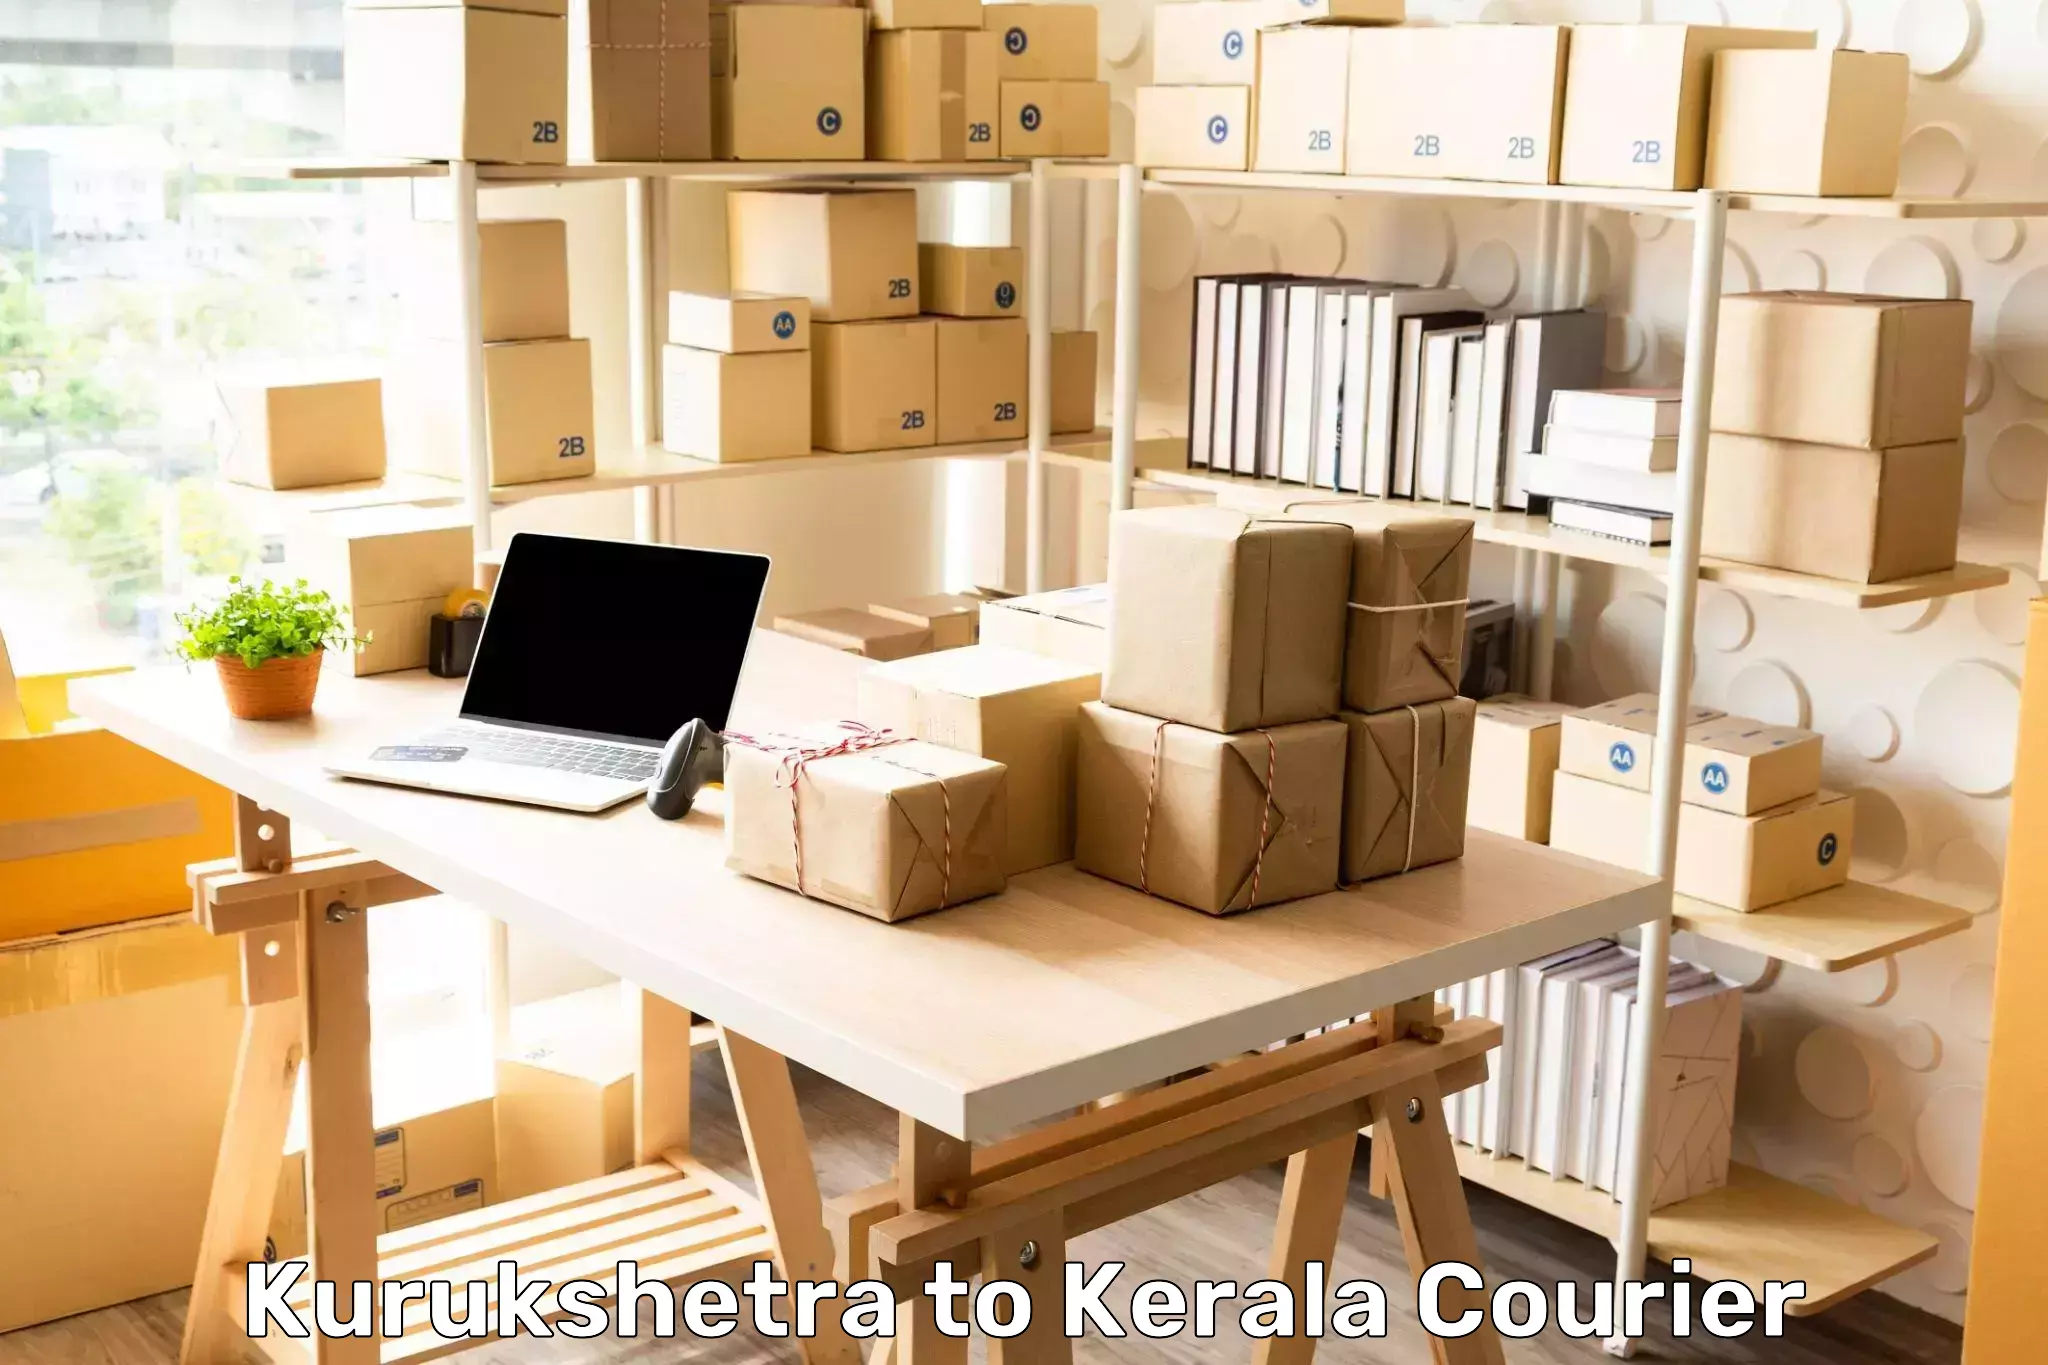 Express mail solutions Kurukshetra to Kunnamkulam